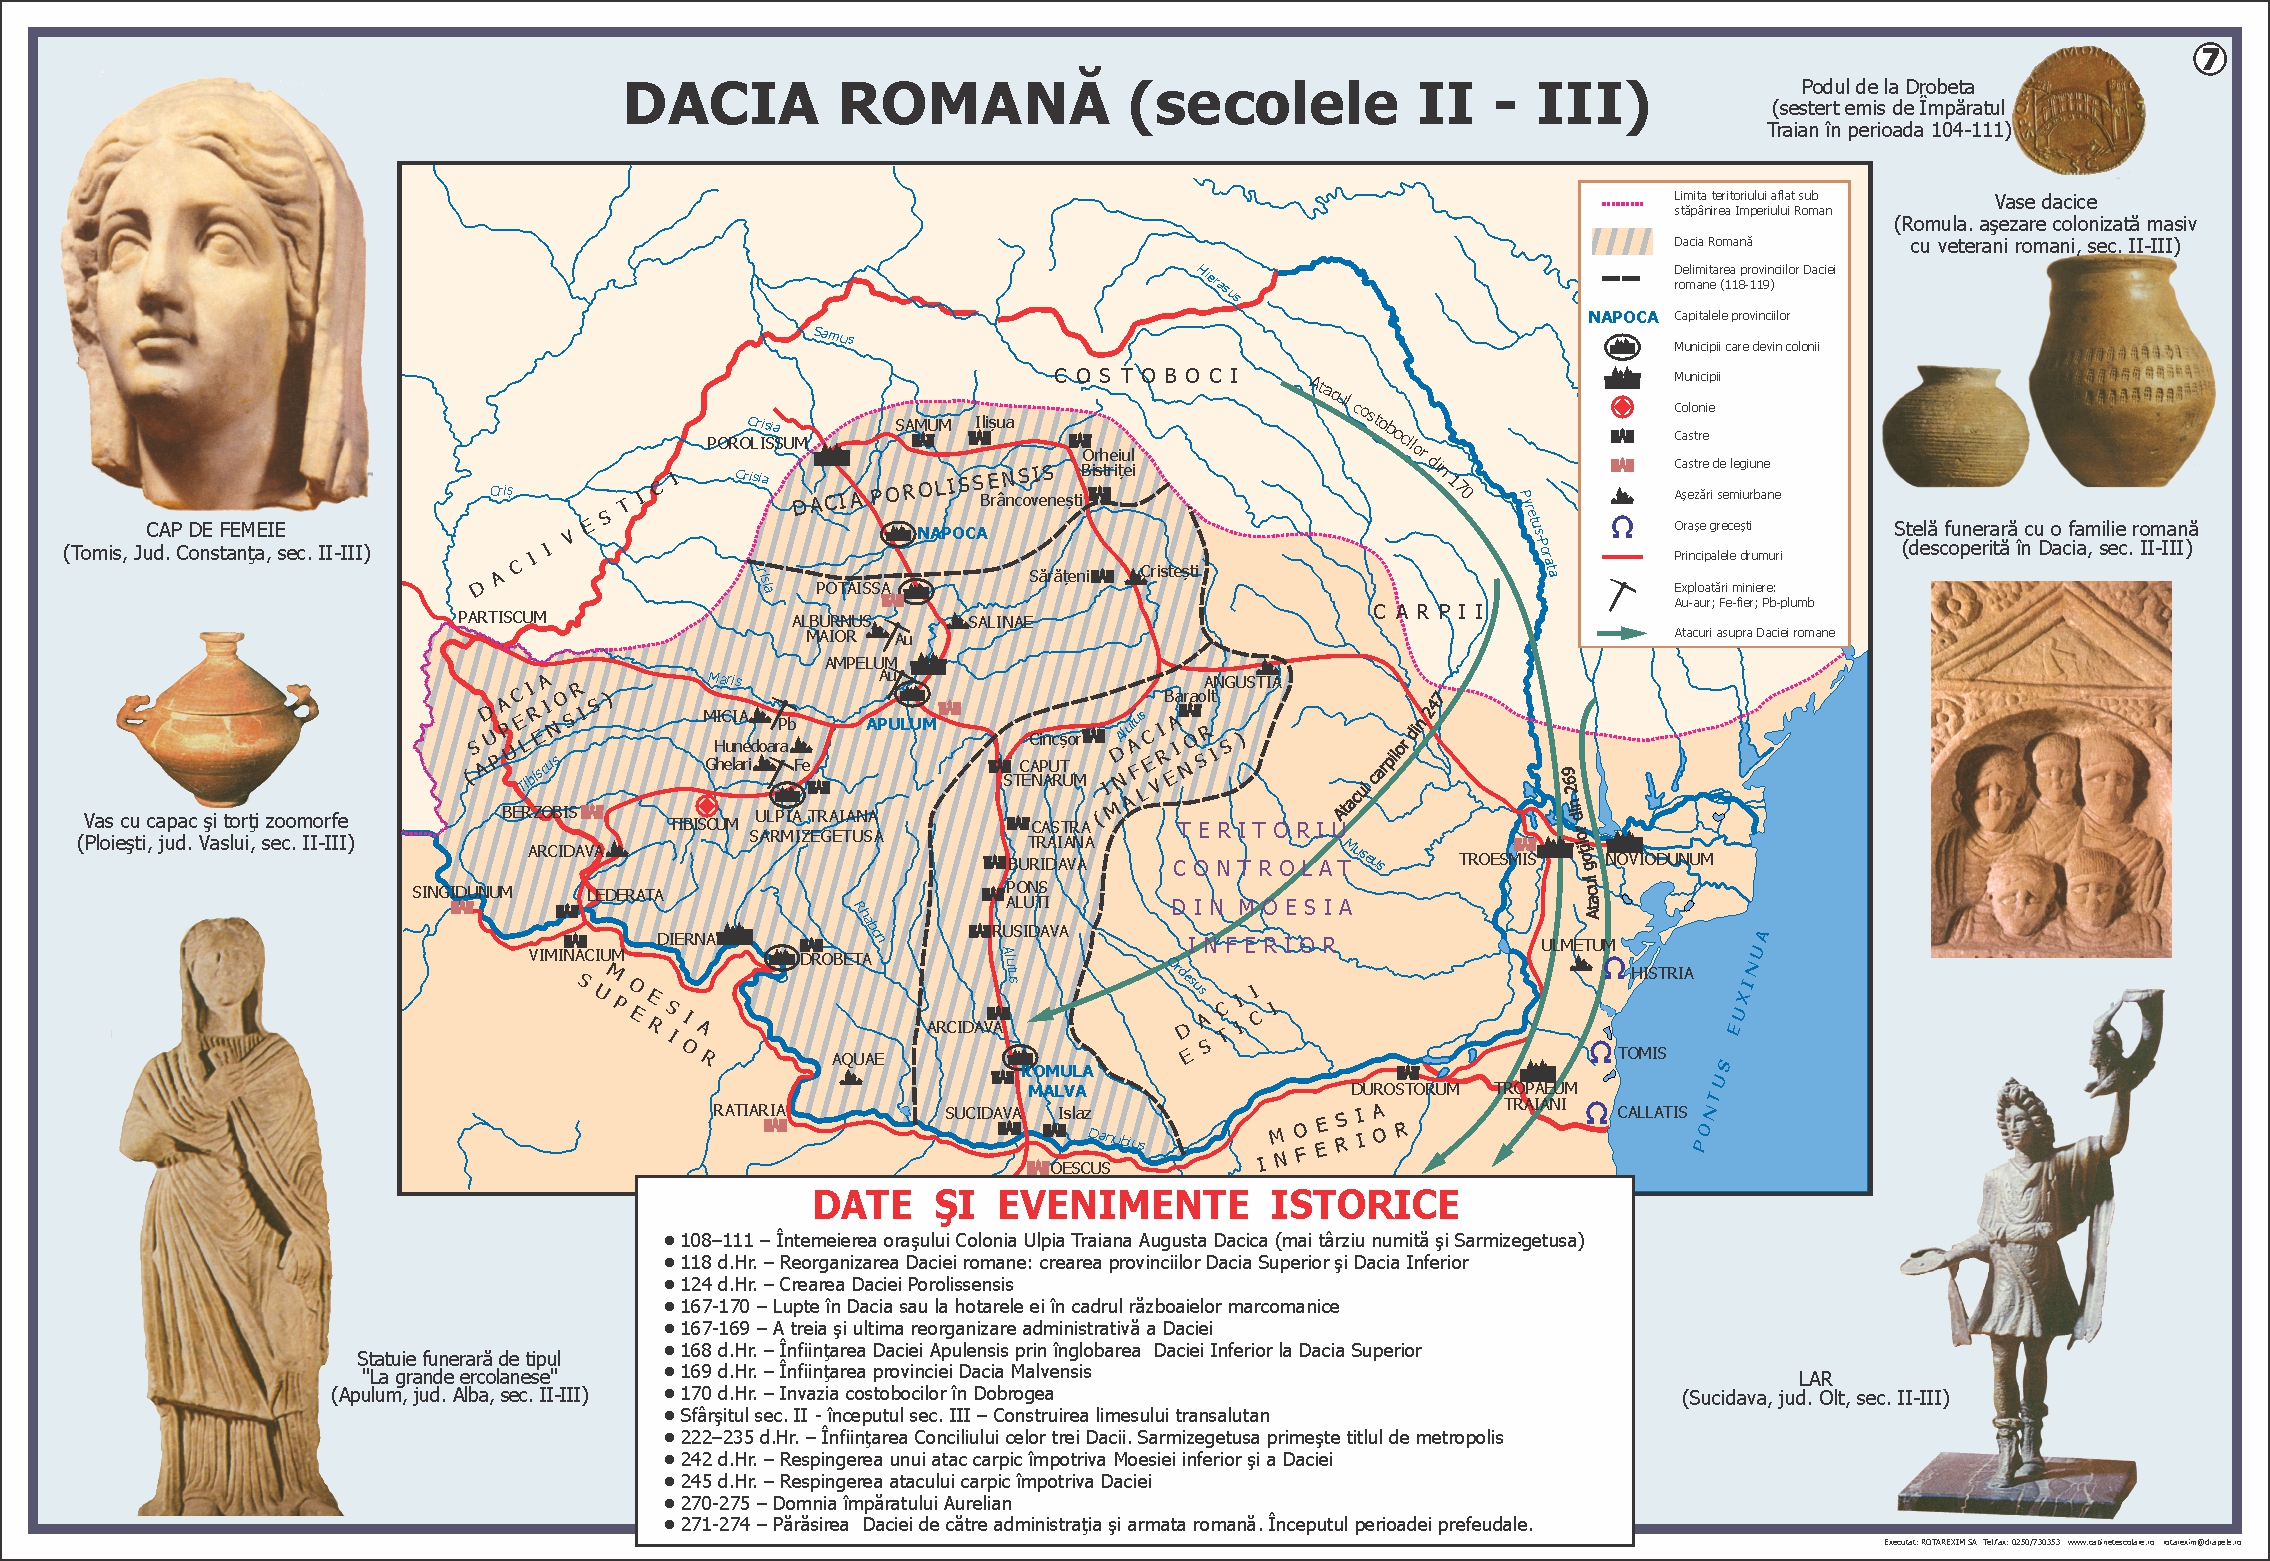 Dacia romana (sec. II-III)